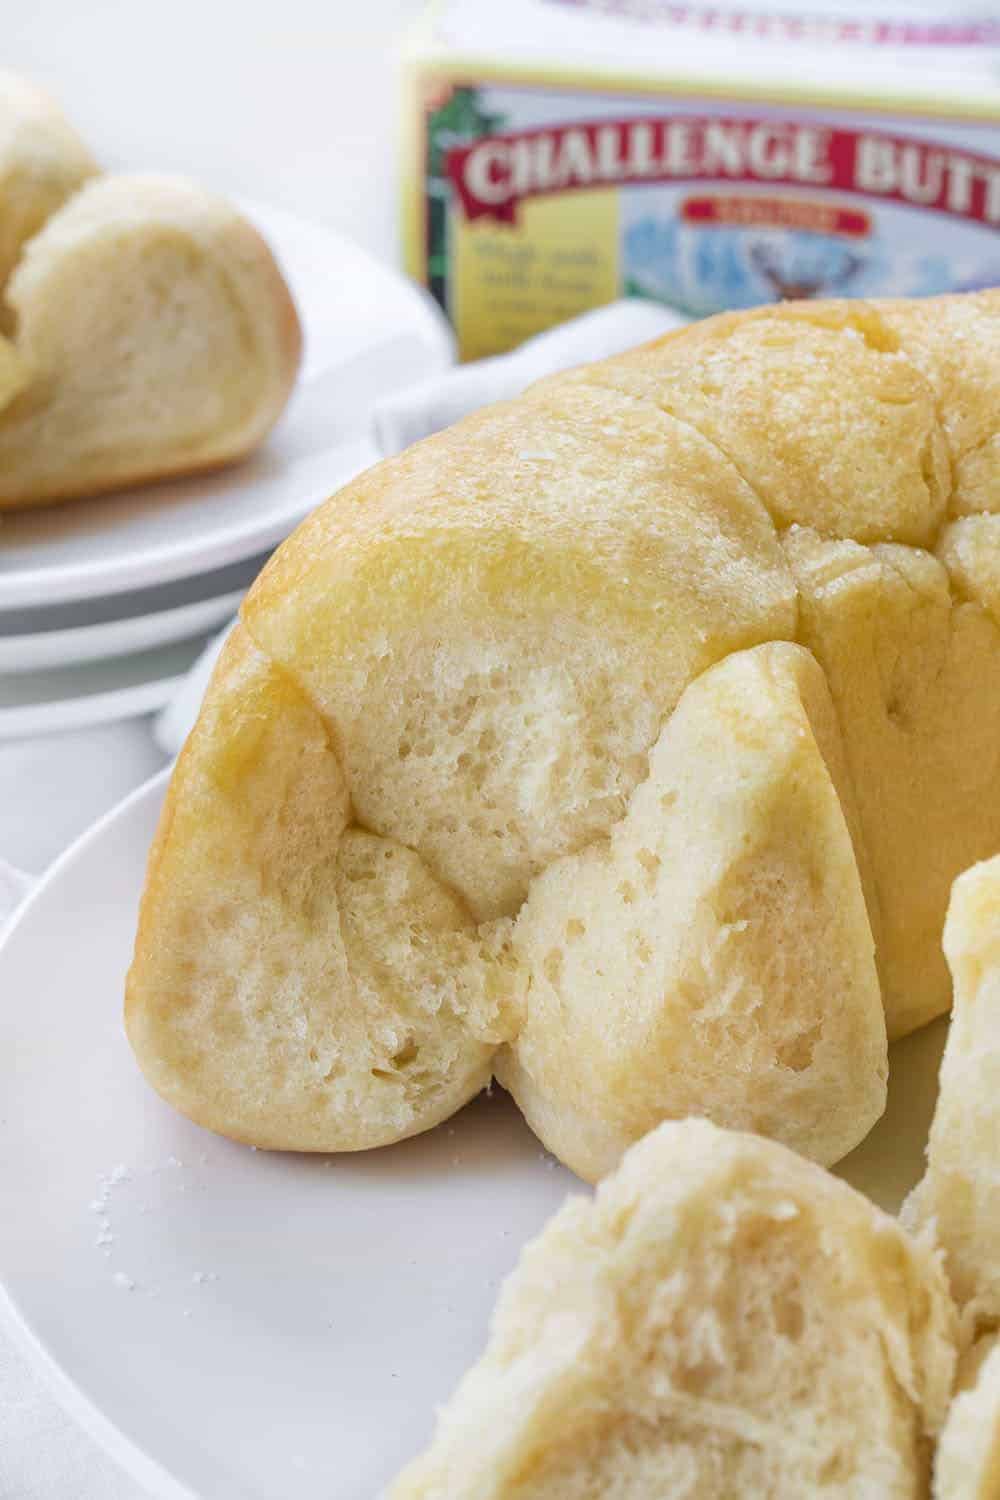 泡沫面包的配方是把面包片取出来放在里面，然后放在后面的盘子里